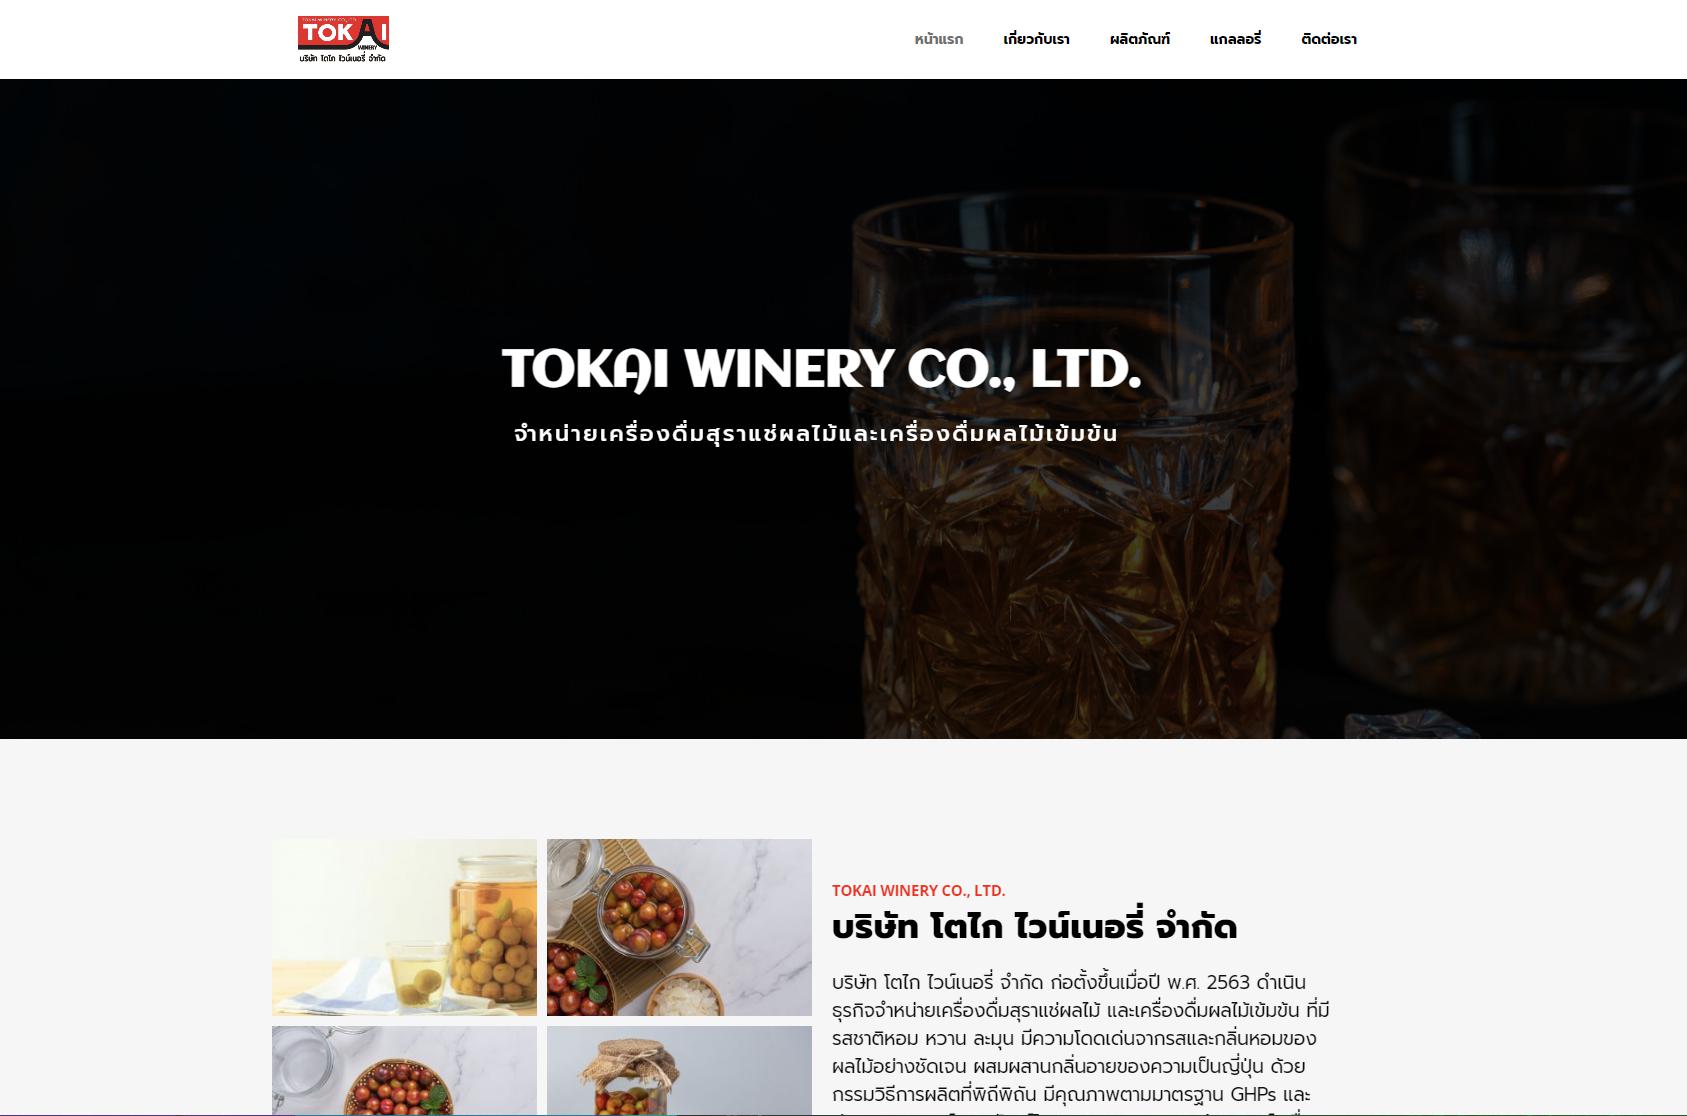 รับทำเว็บไซต์ รับออกแบบเว็บไซต์ เว็บไซต์สำเร็จรูป ตัวอย่างเว็บไซต์  - ธุรกิจบริษัท TTT-WEBSITE